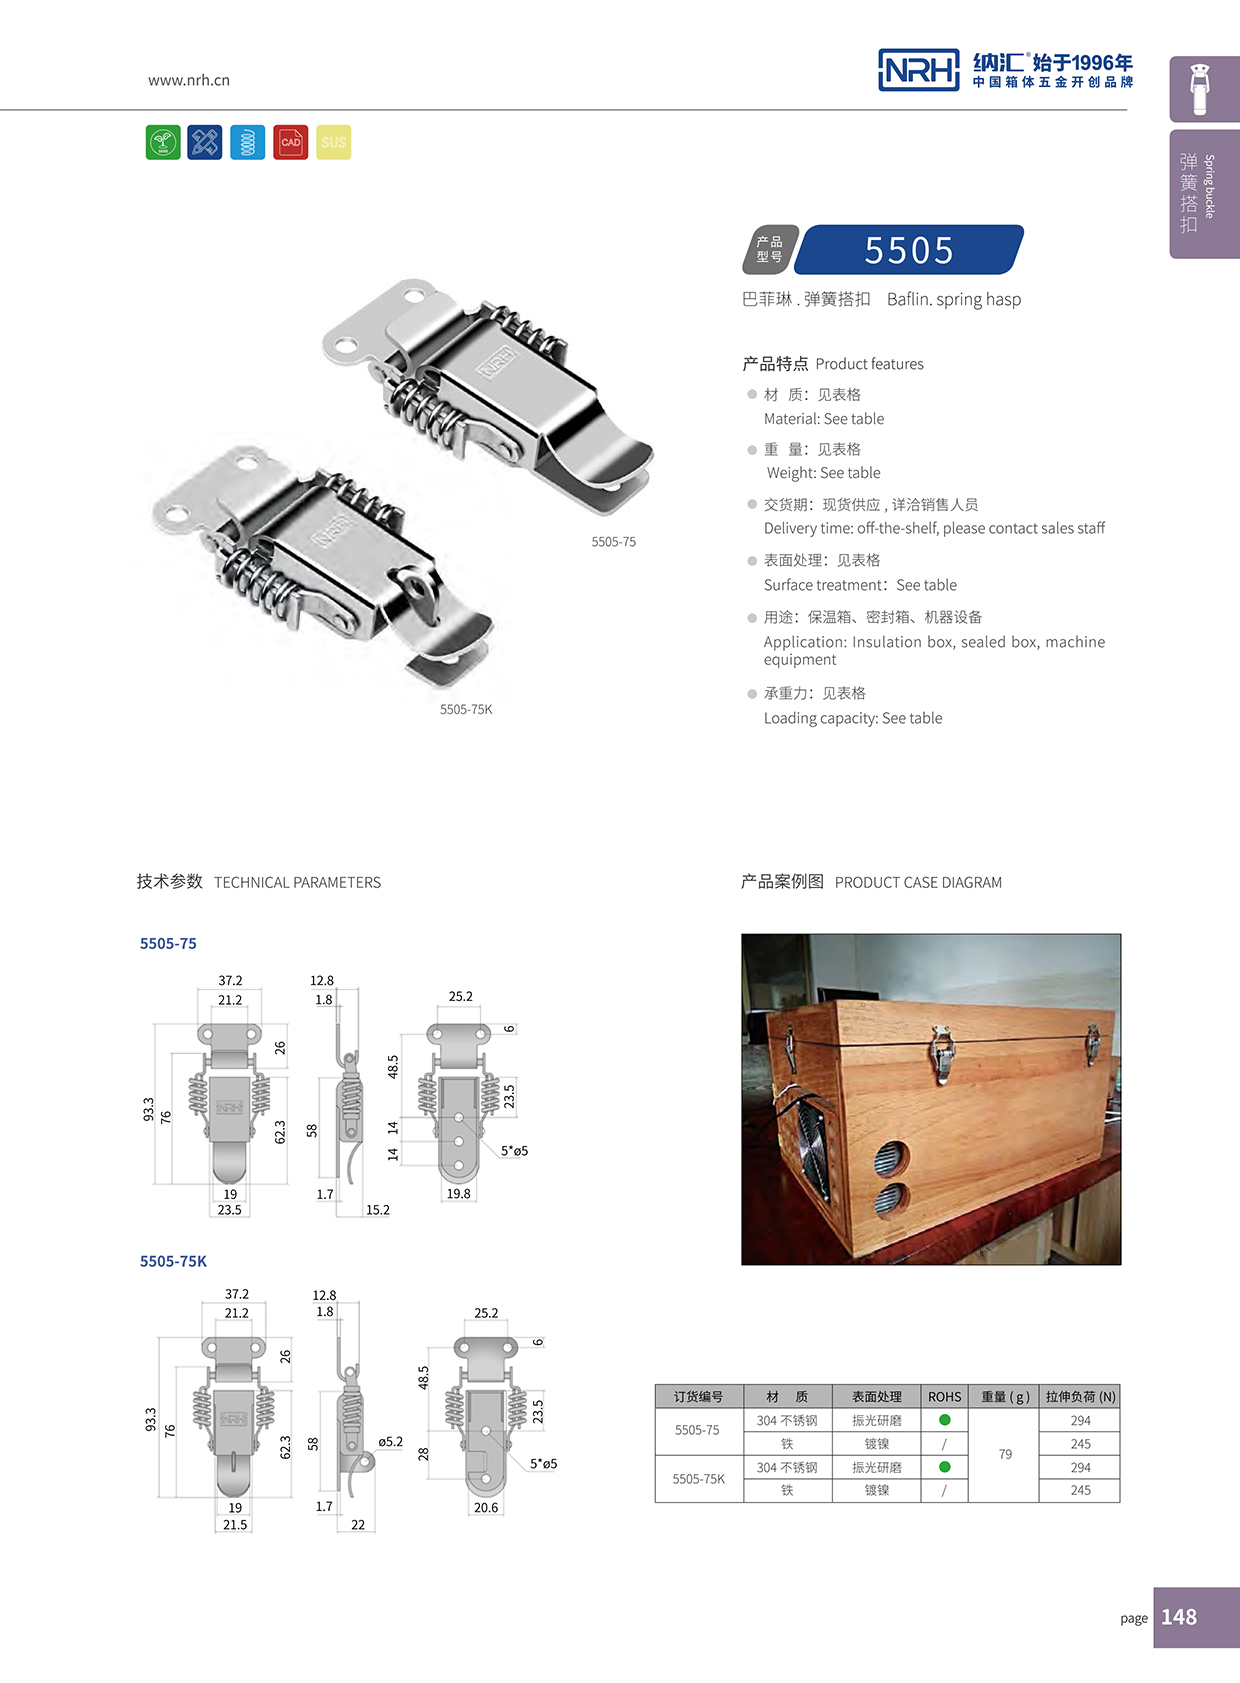 纳汇/NRH 5502-75K 工具箱箱扣